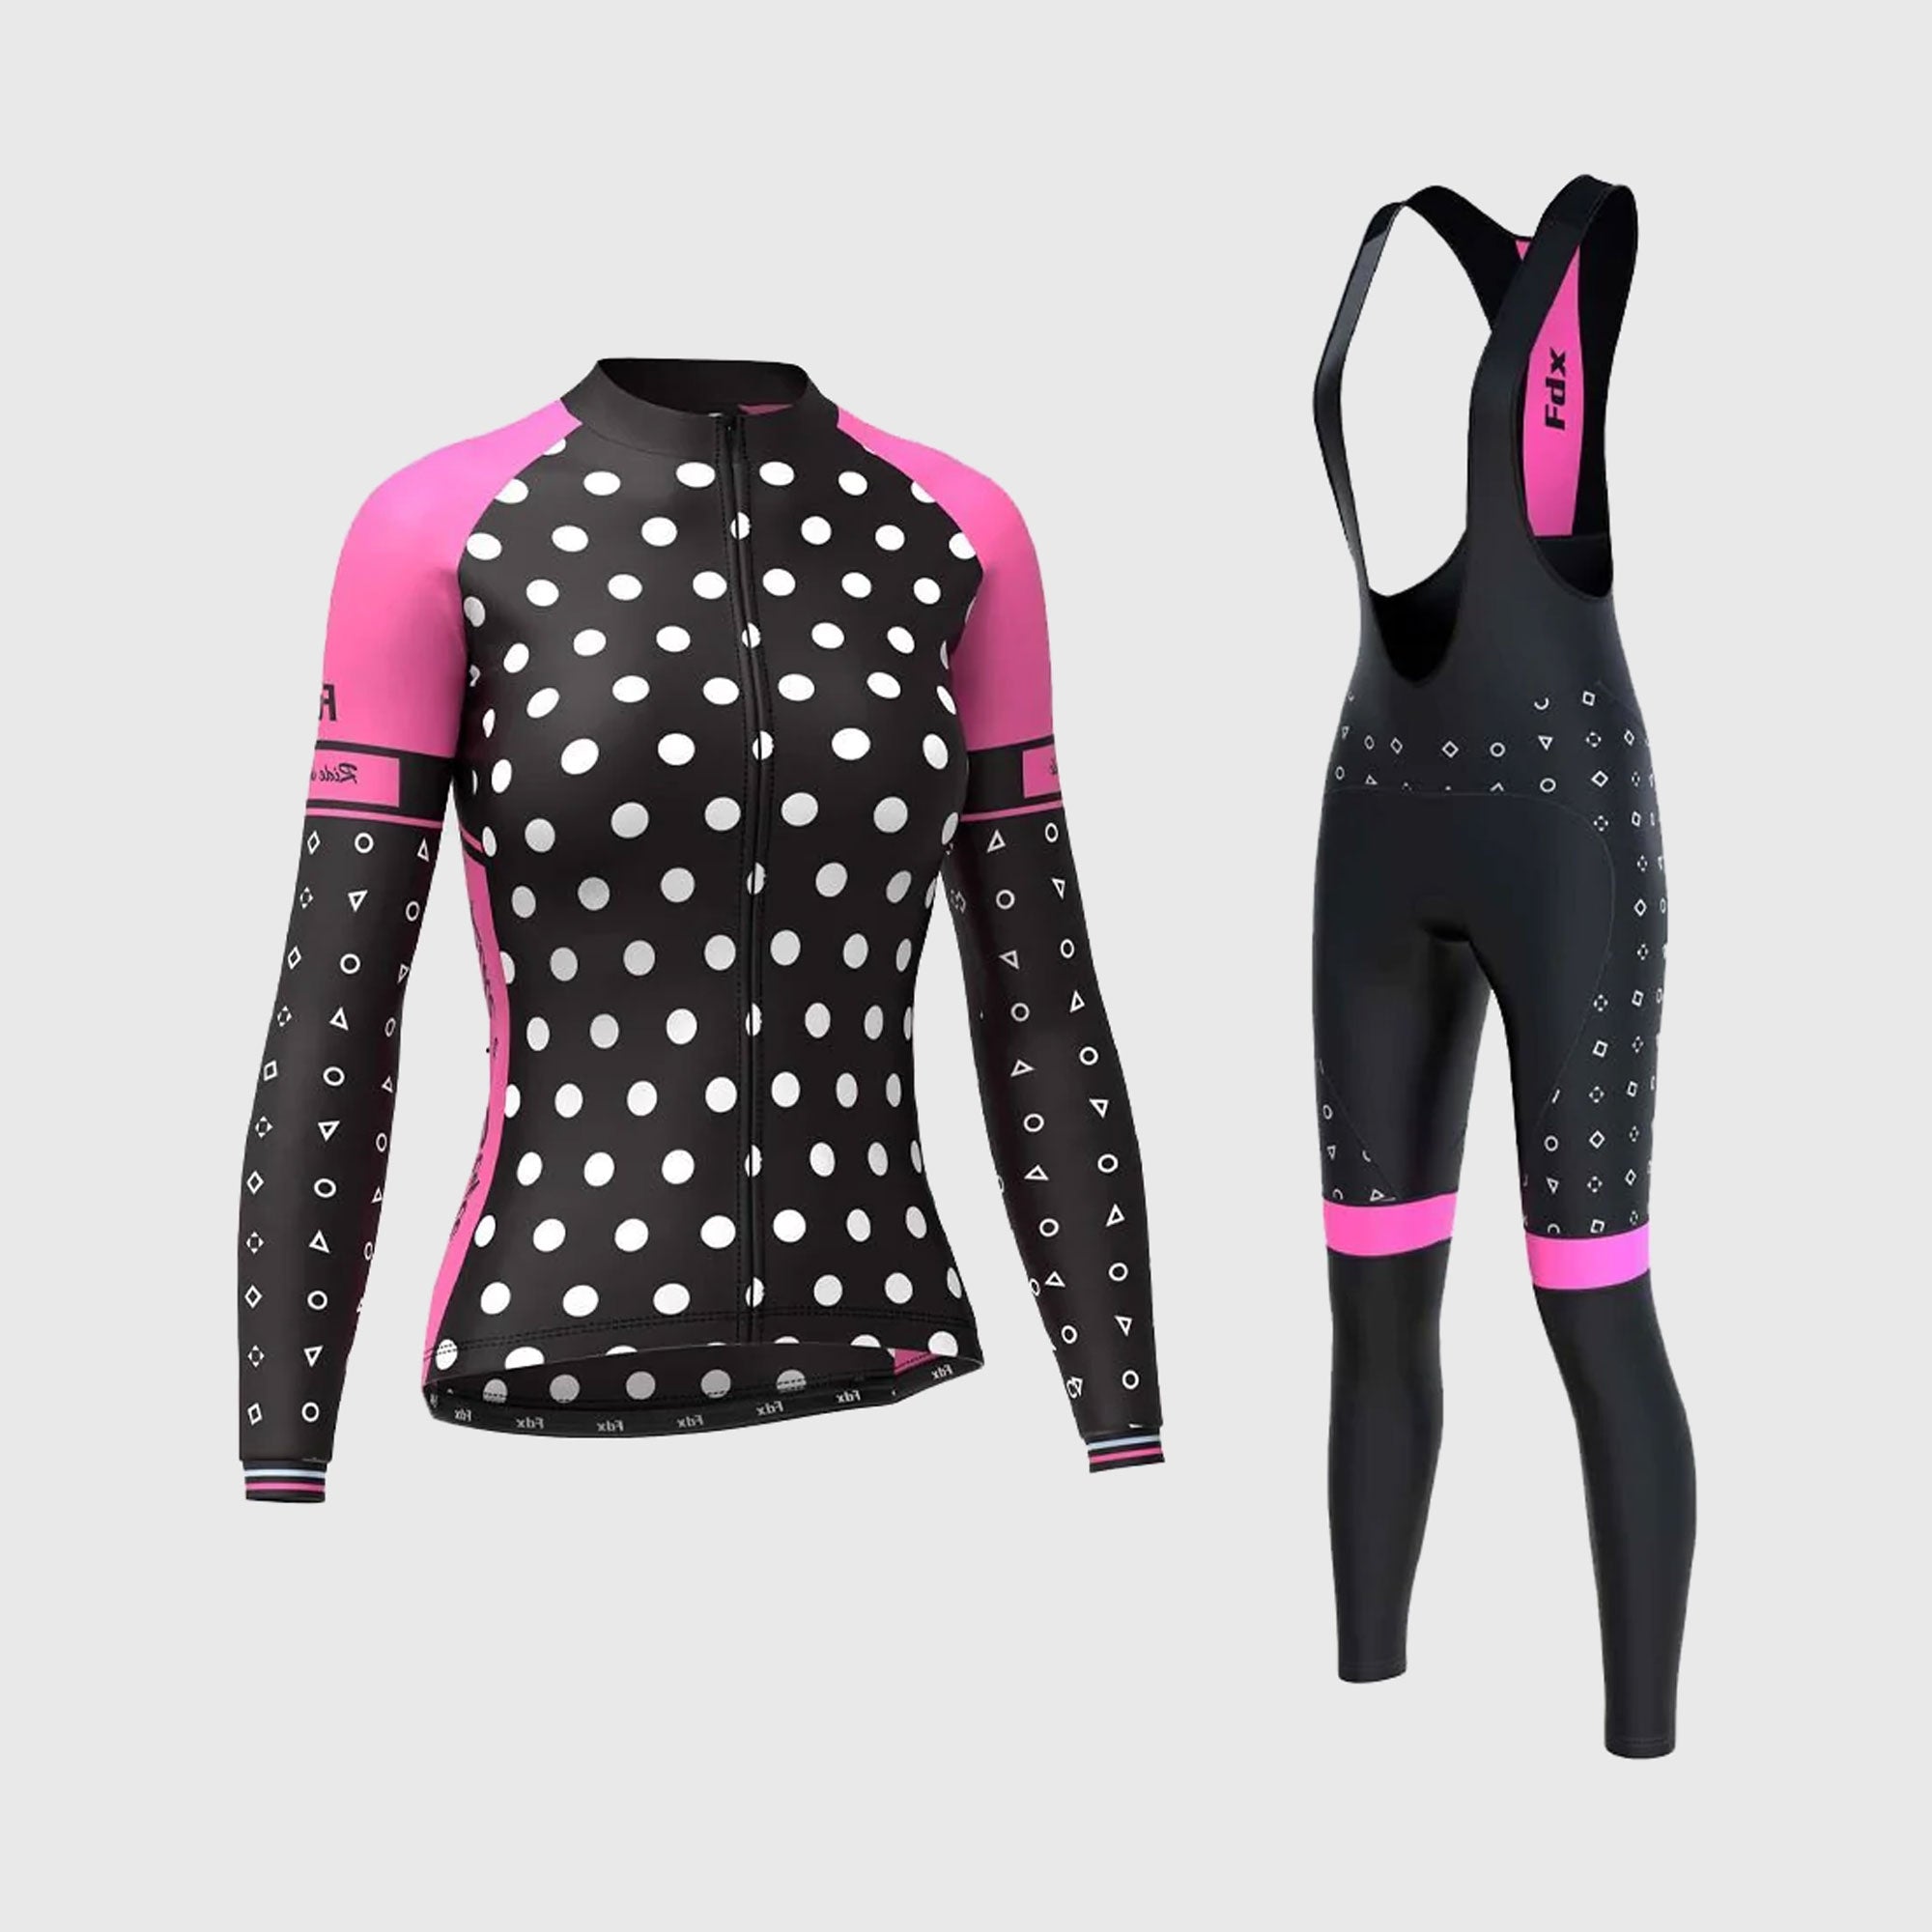 Fdx Women's Black & Pink Long Sleeve Cycling Jersey & Gel Padded Bib Tights Pants for Winter Roubaix Thermal Fleece Road Bike Wear Windproof, Hi-viz Reflectors & Pockets - Polka Dots